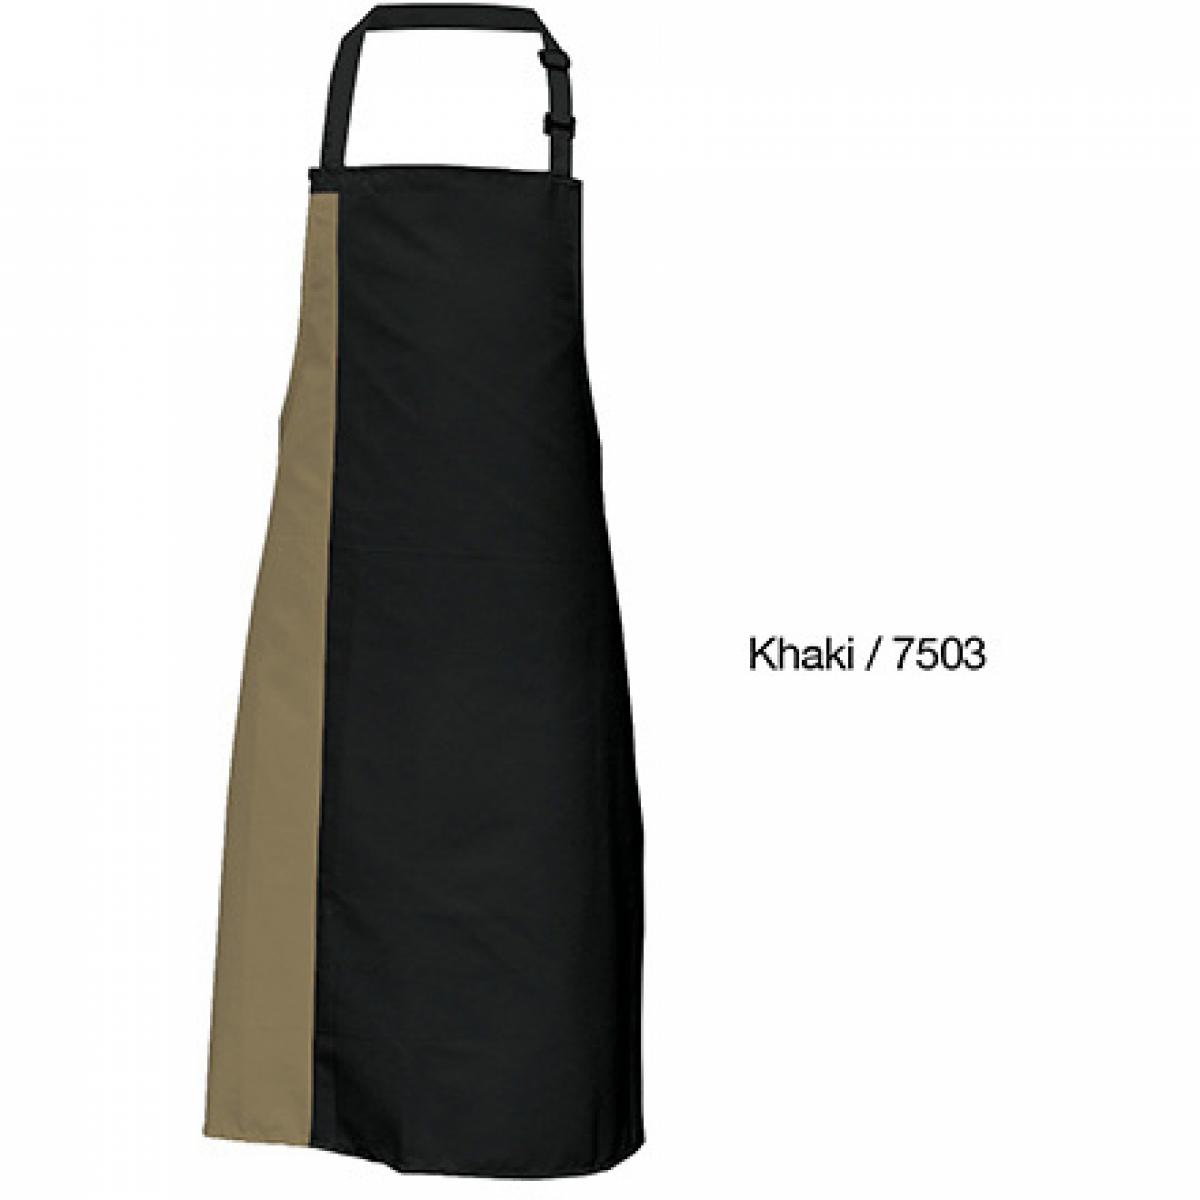 Hersteller: Link Kitchen Wear Herstellernummer: DS8572 Artikelbezeichnung: Duo Apron - 72 x 85 cm - Waschbar bis 60 °C Farbe: Black/Khaki (ca. Pantone 7503)